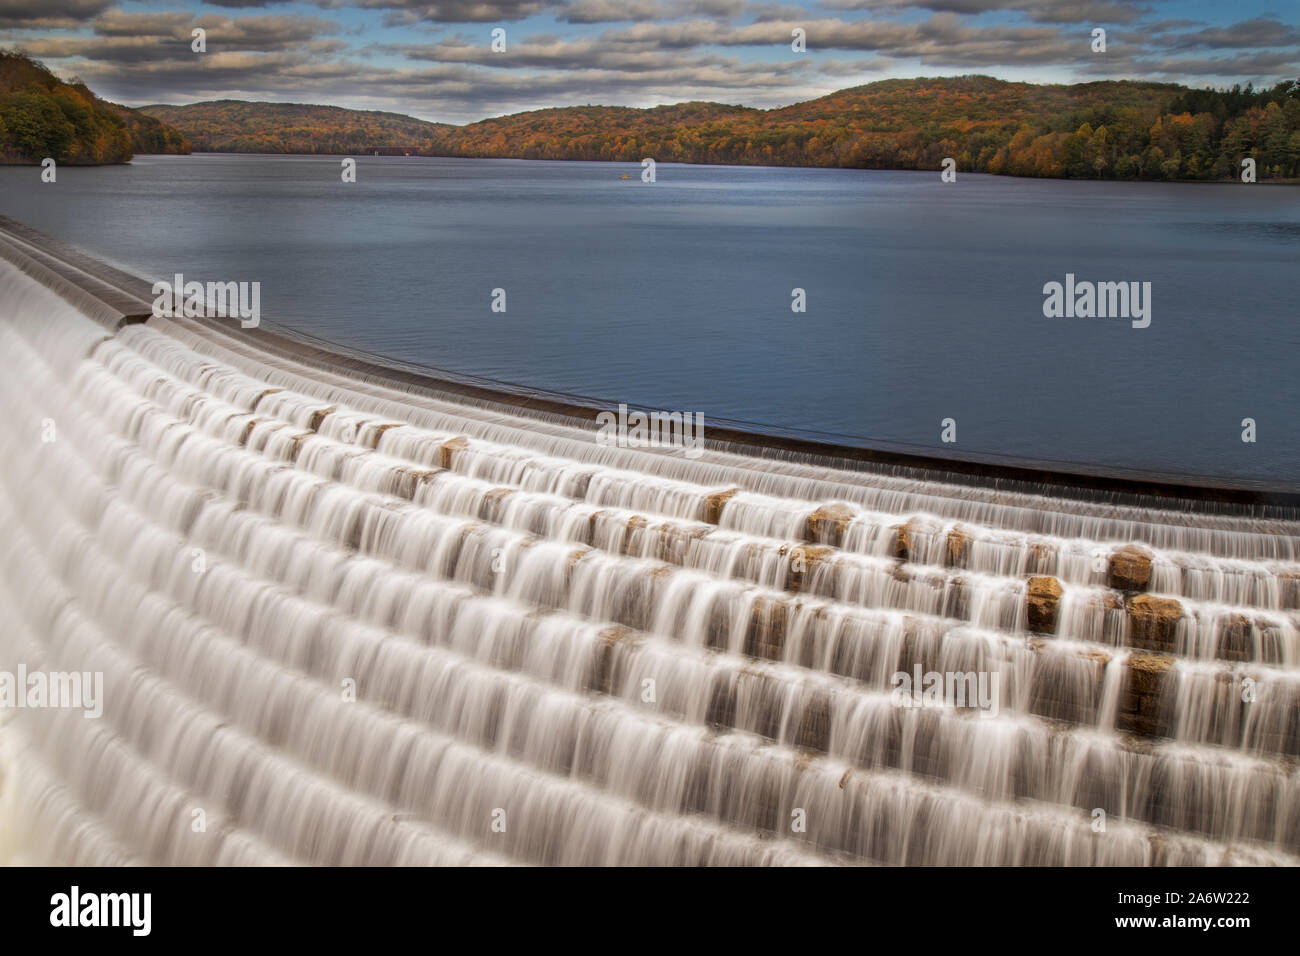 Croton nouveau sur le barrage Barrage de Hudson - Croton cascade aussi connu sous le nom de barrage de Cornell pendant une belle après-midi d'automne. Banque D'Images